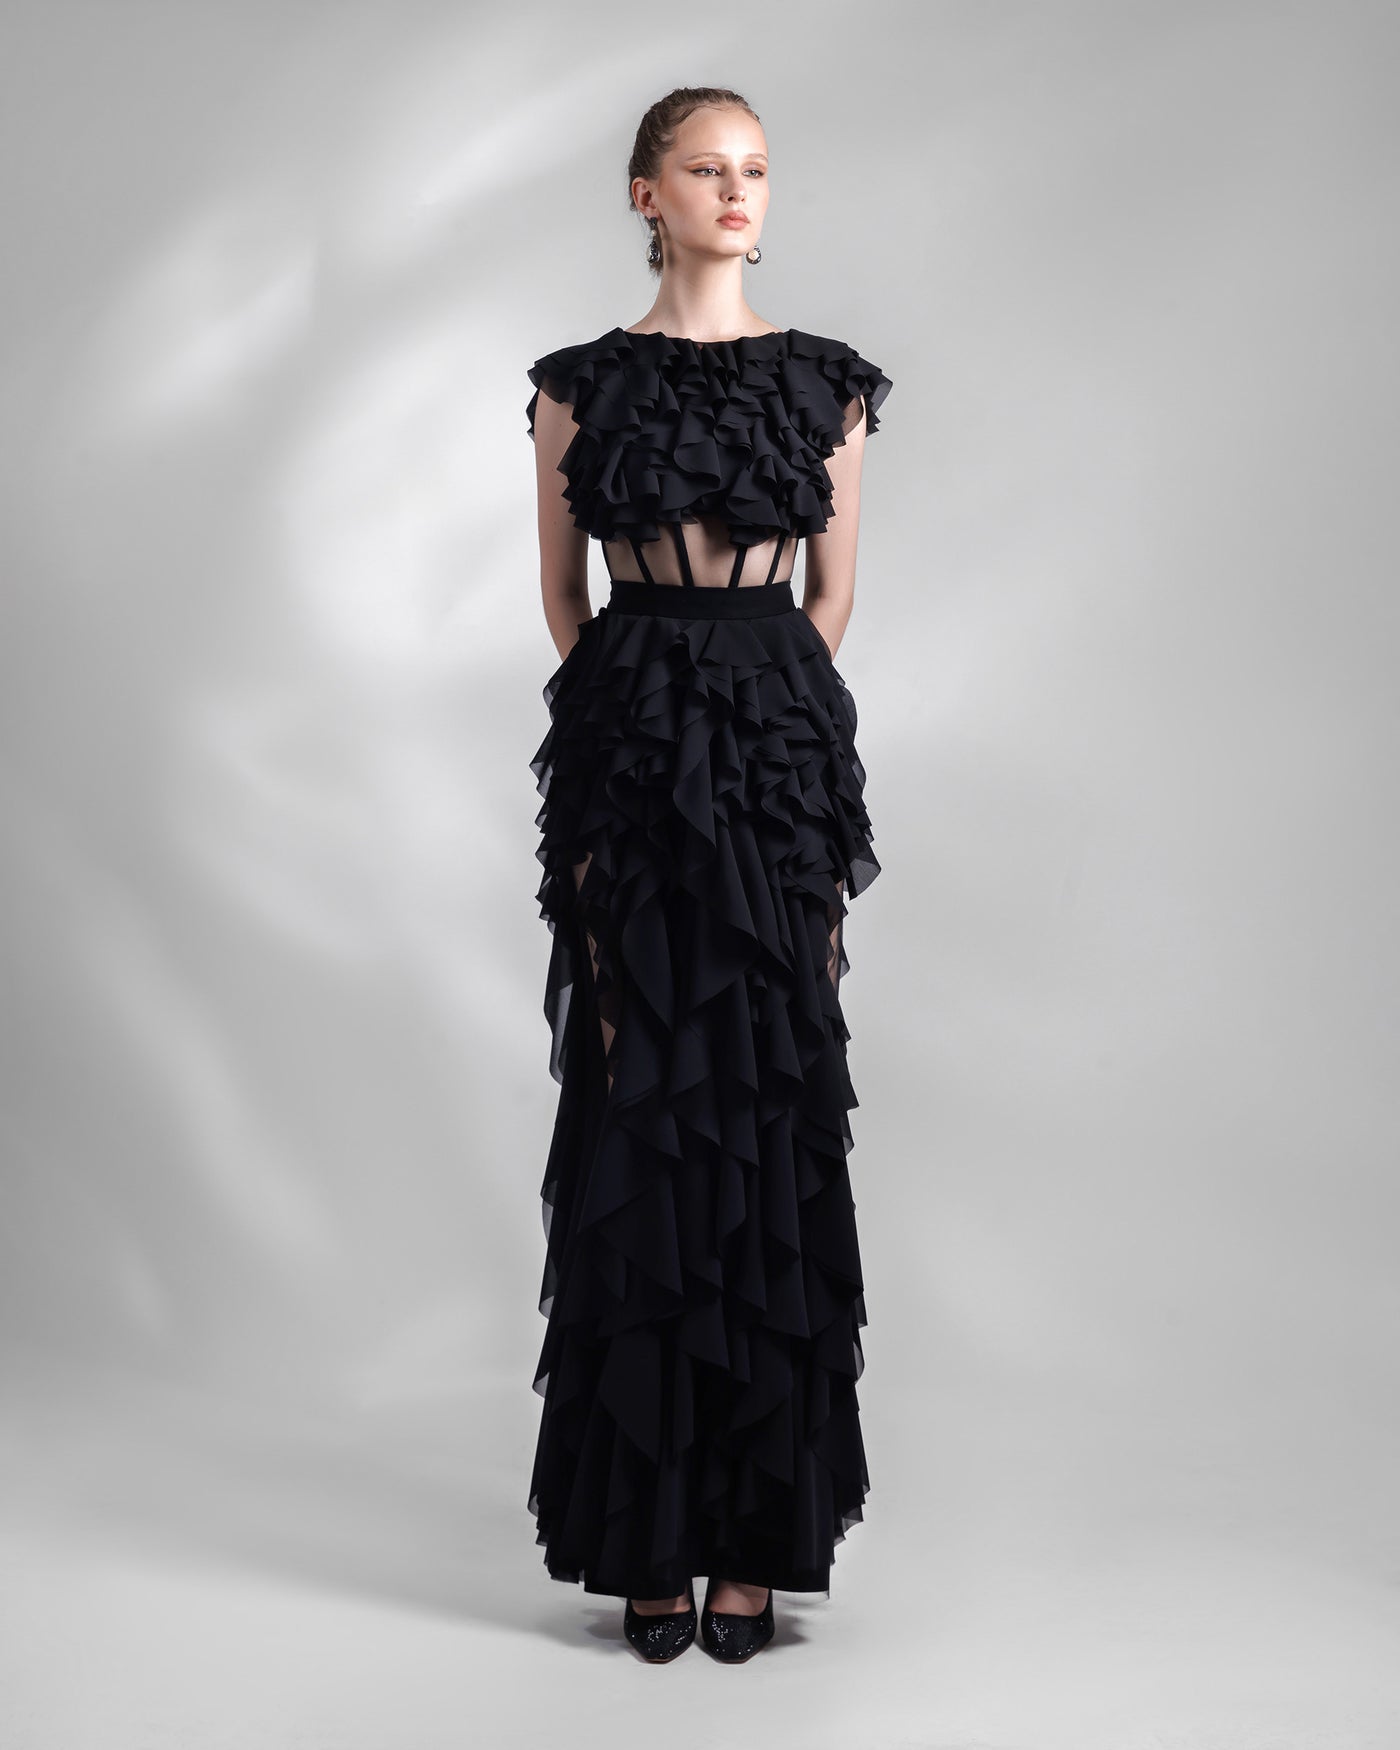 Ruffled Long Black Dress